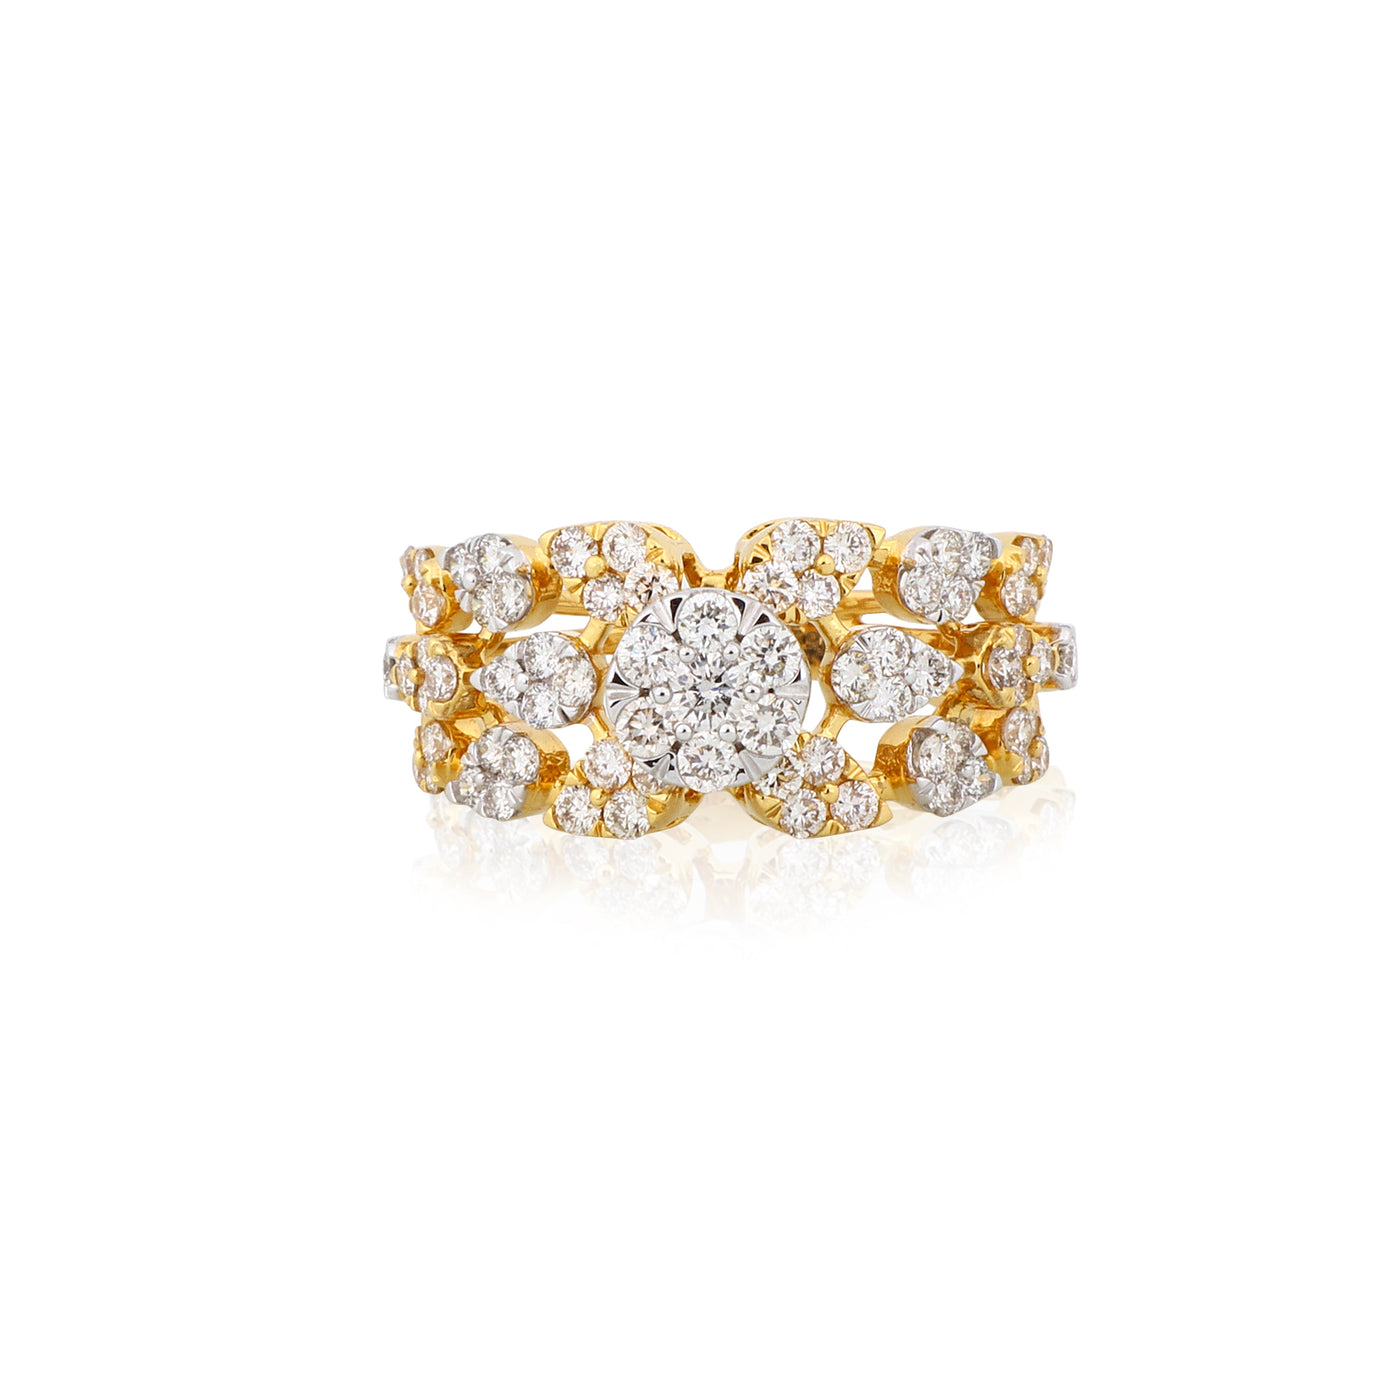 The Mandira Diamond Ring